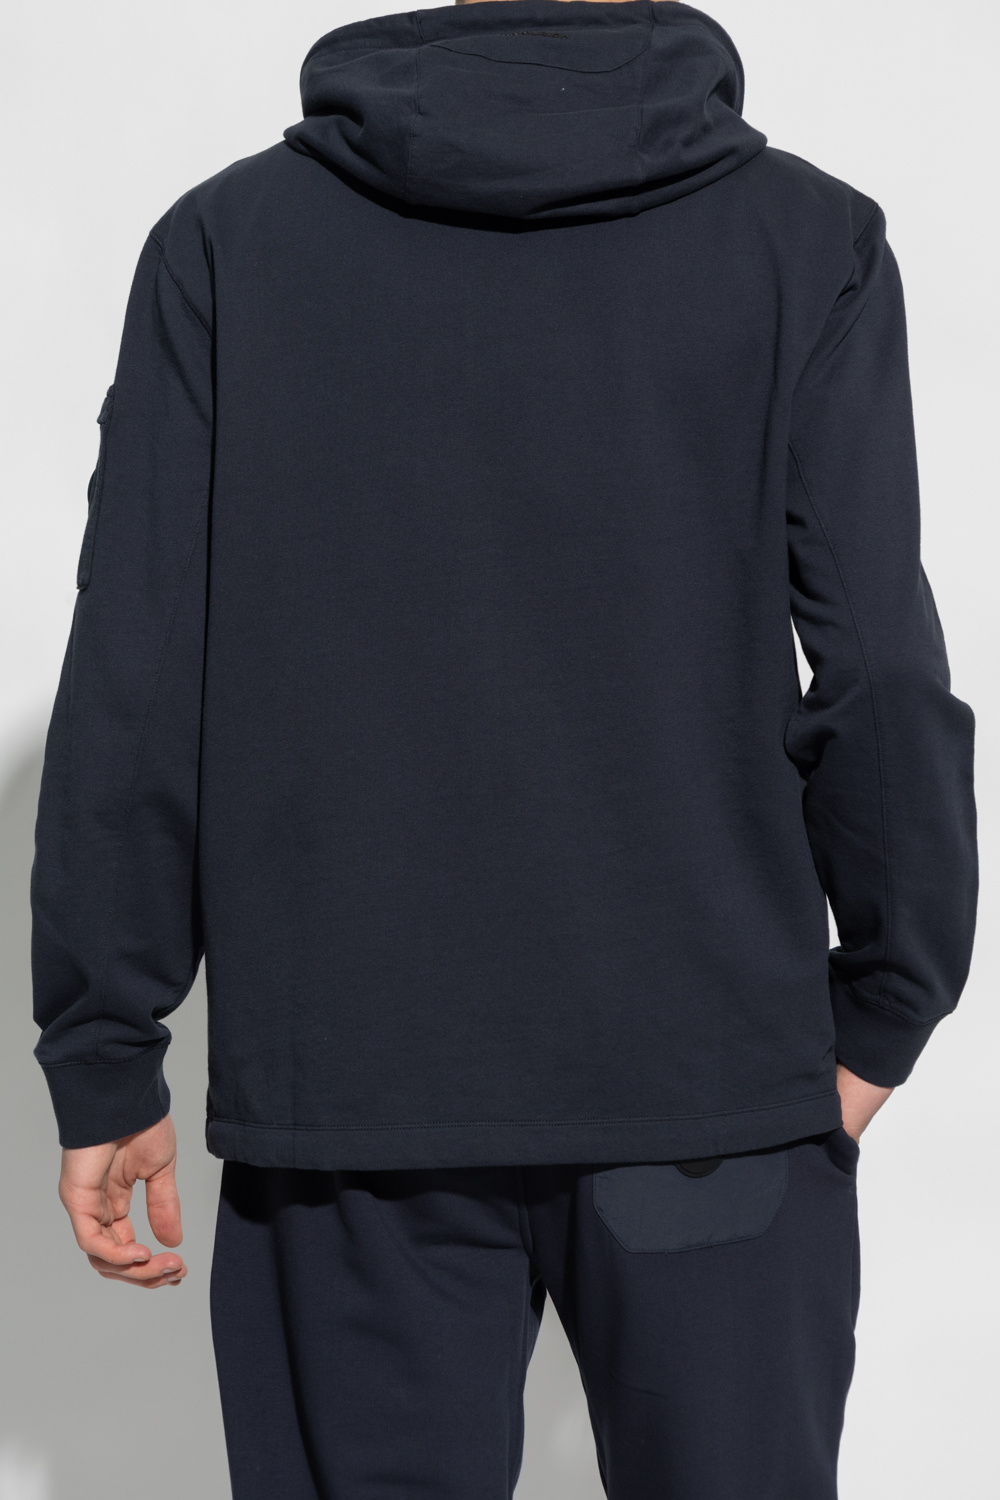 Woolrich Calvin Klein Jeans x Andy Warhol denim jacket